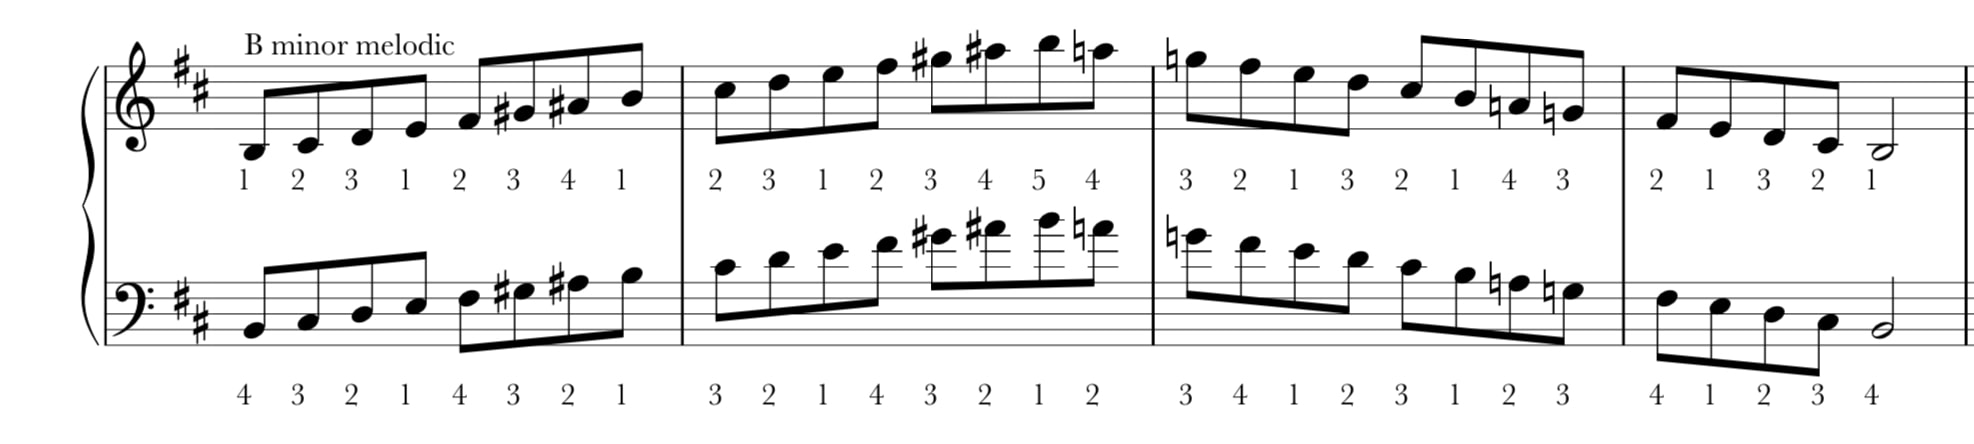 b flat melodic minor scale bass